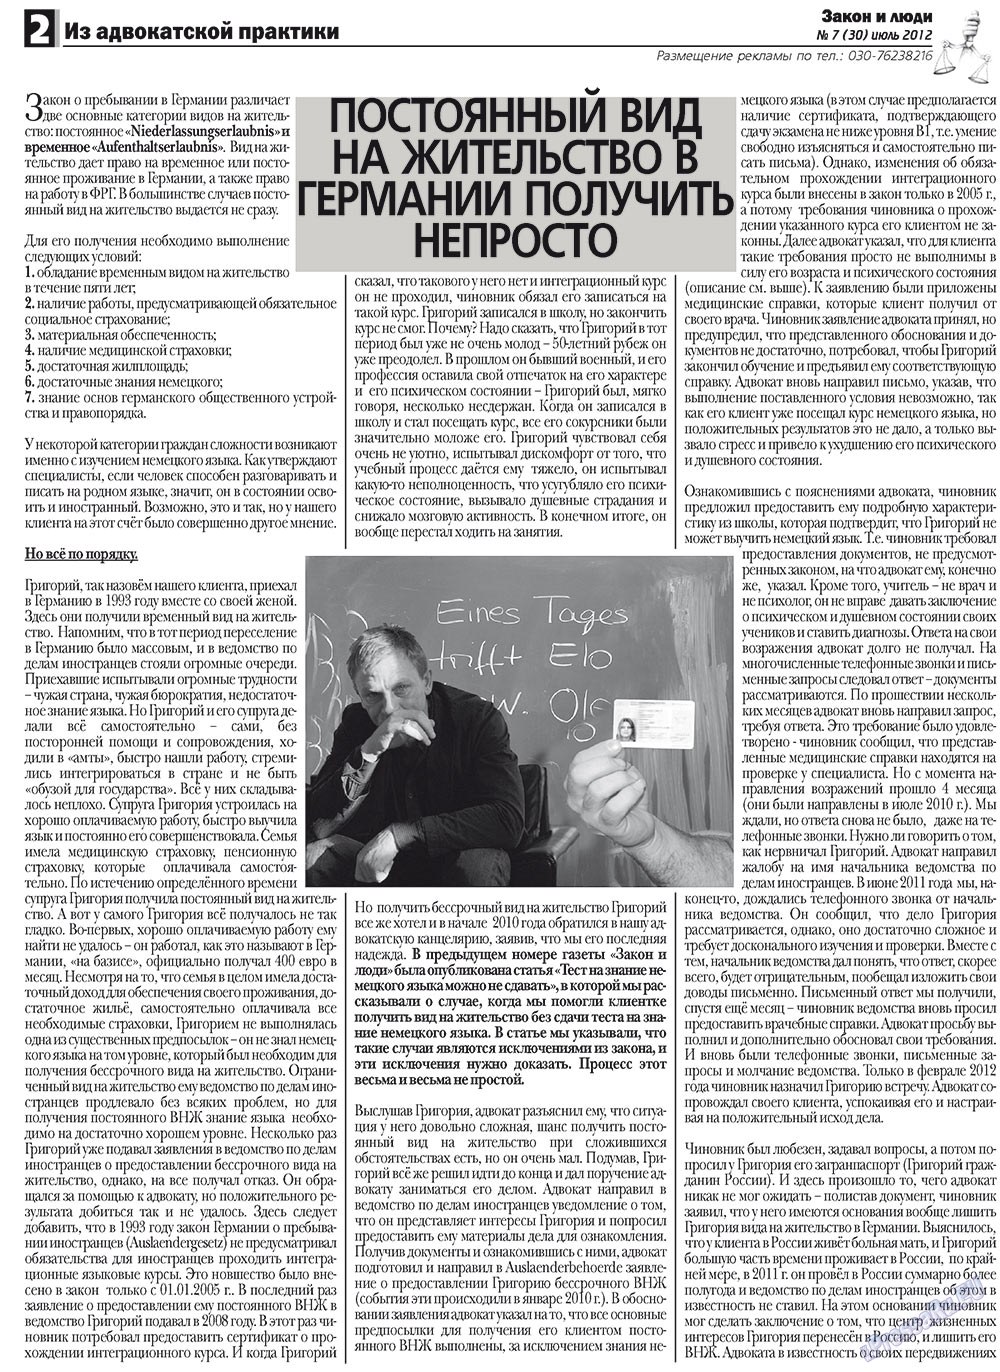 Закон и люди, газета. 2012 №7 стр.2